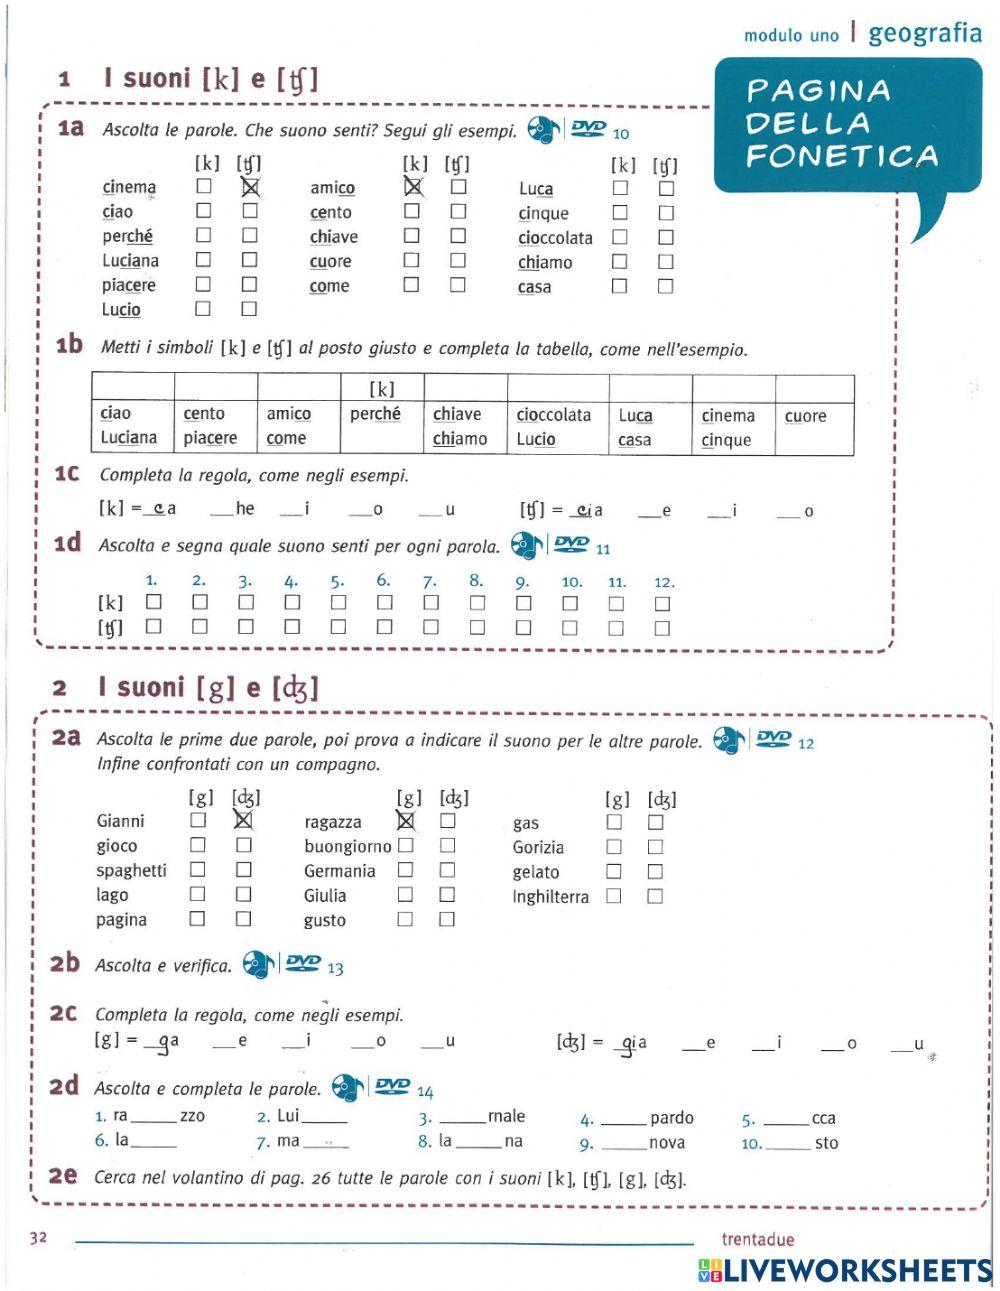 Pagina della fonetica DOMANI 1 modulo 1